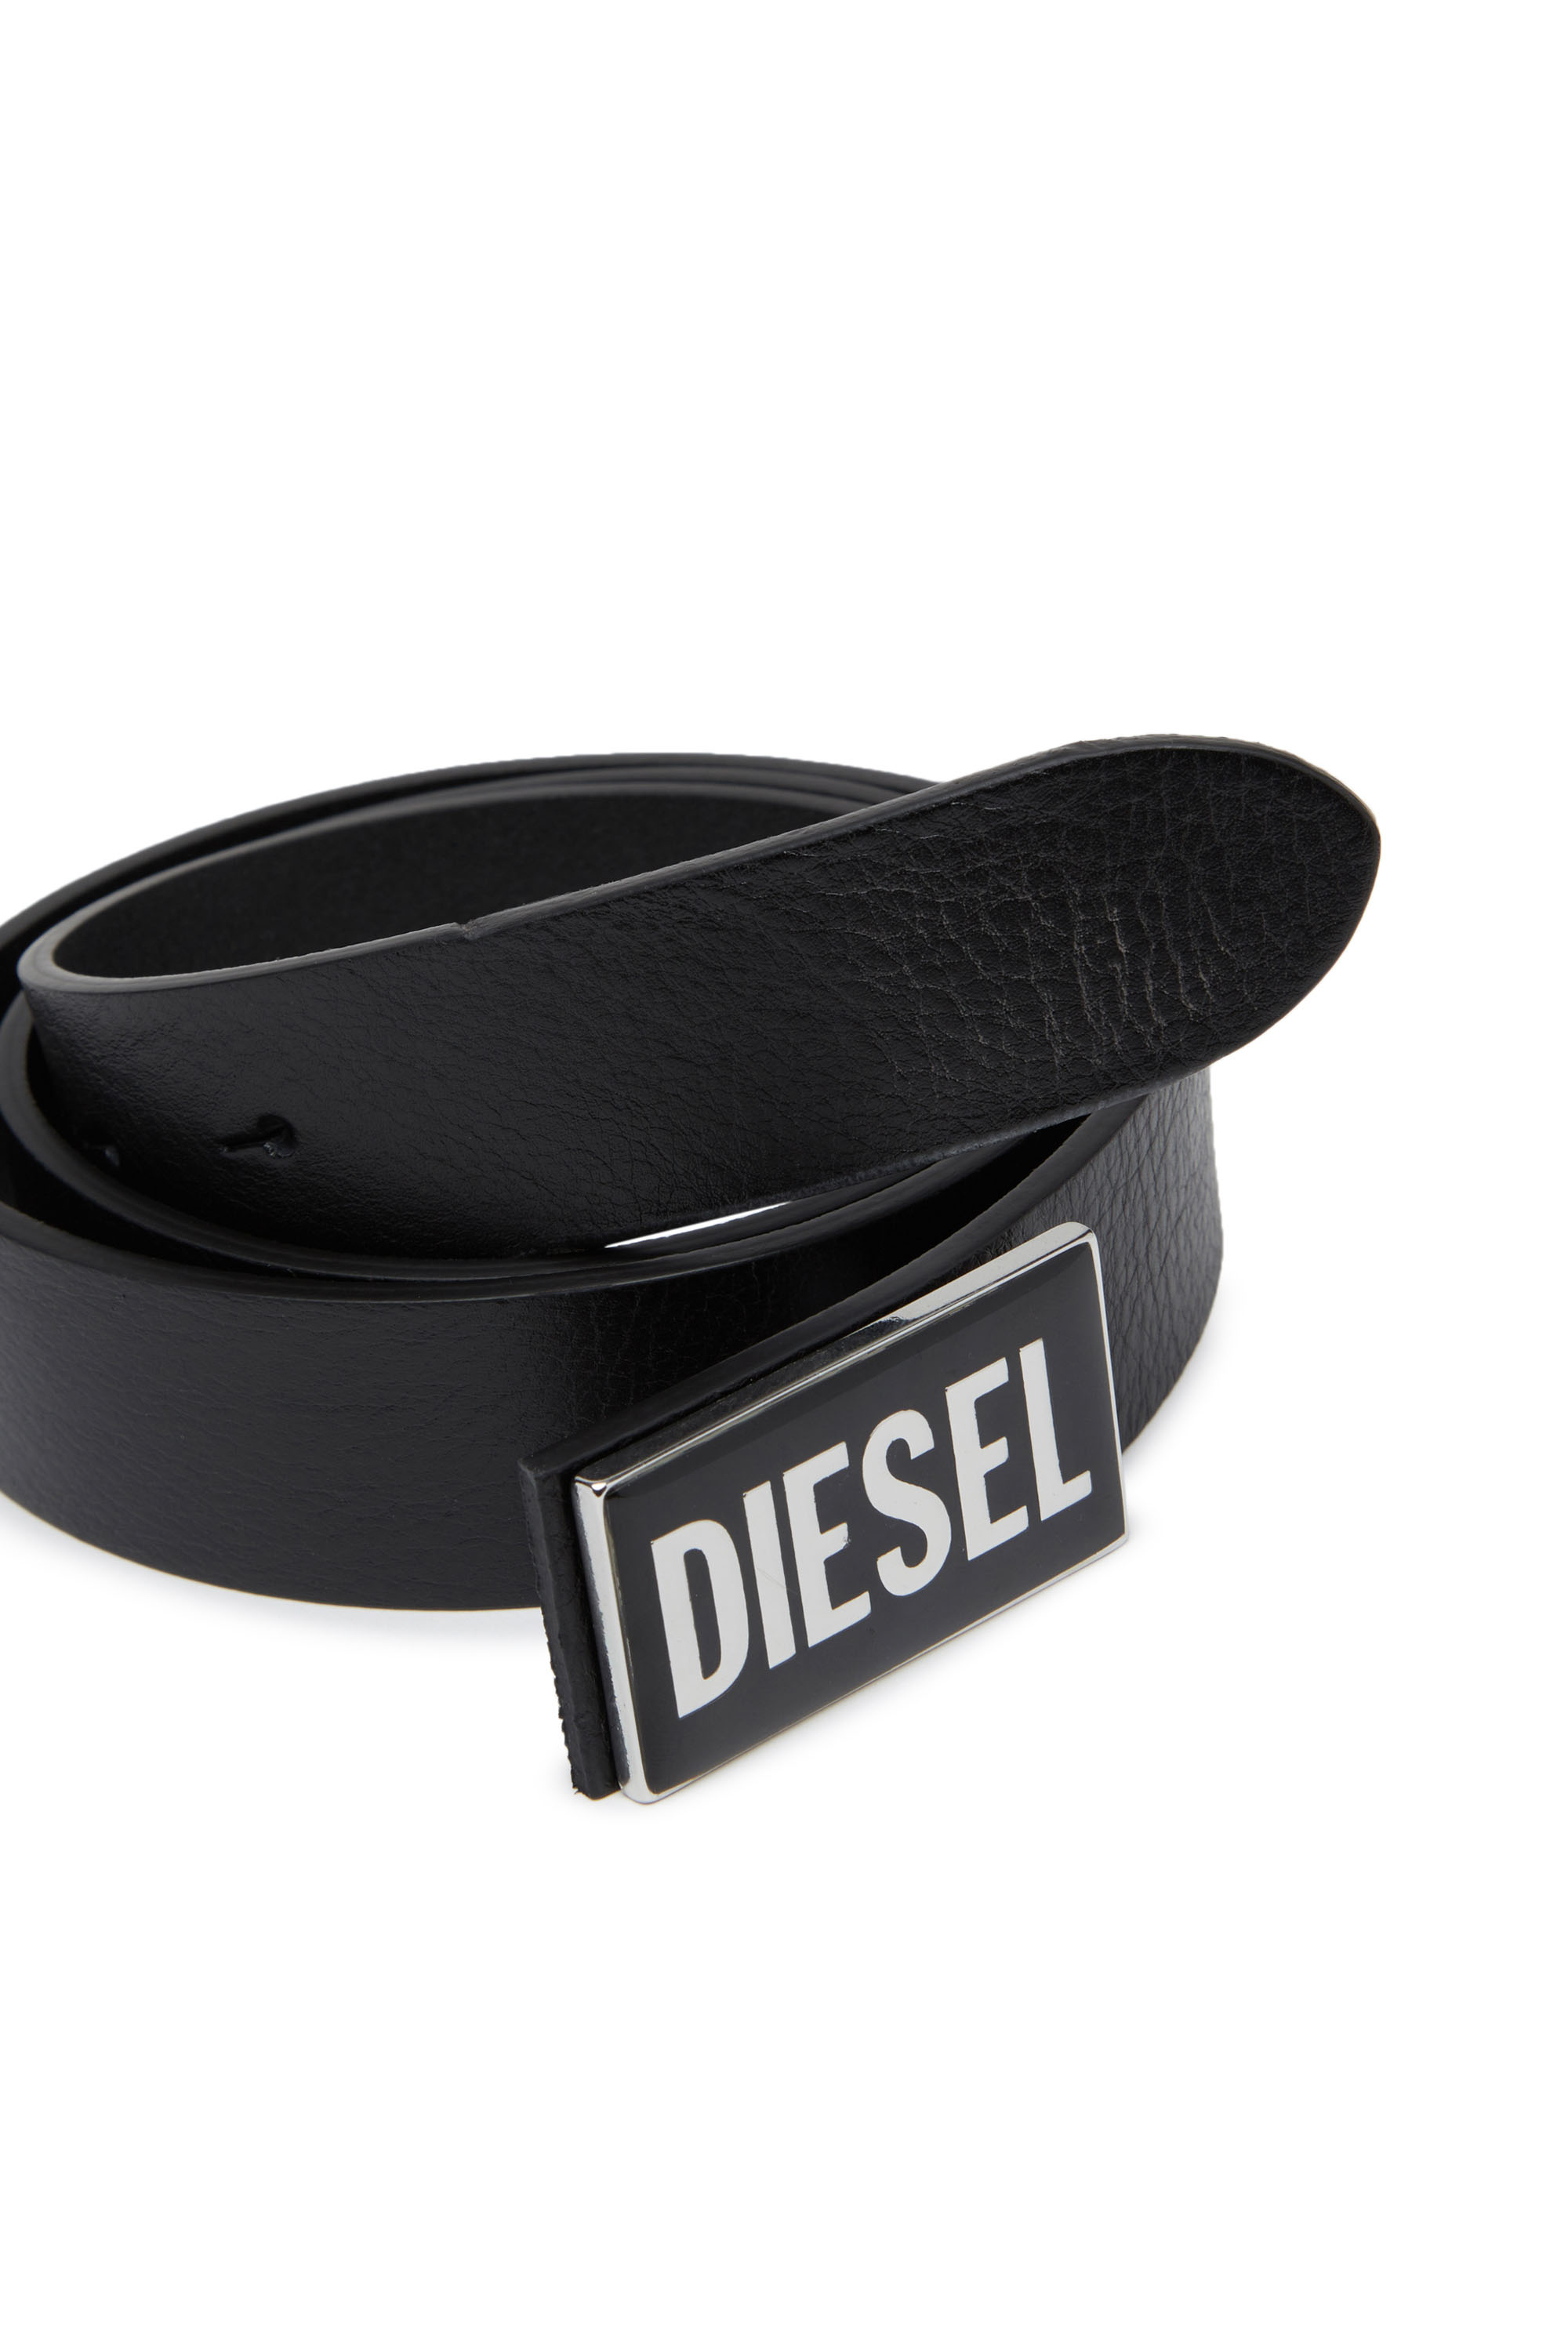 Diesel - B-GLOSSY, Black - Image 3